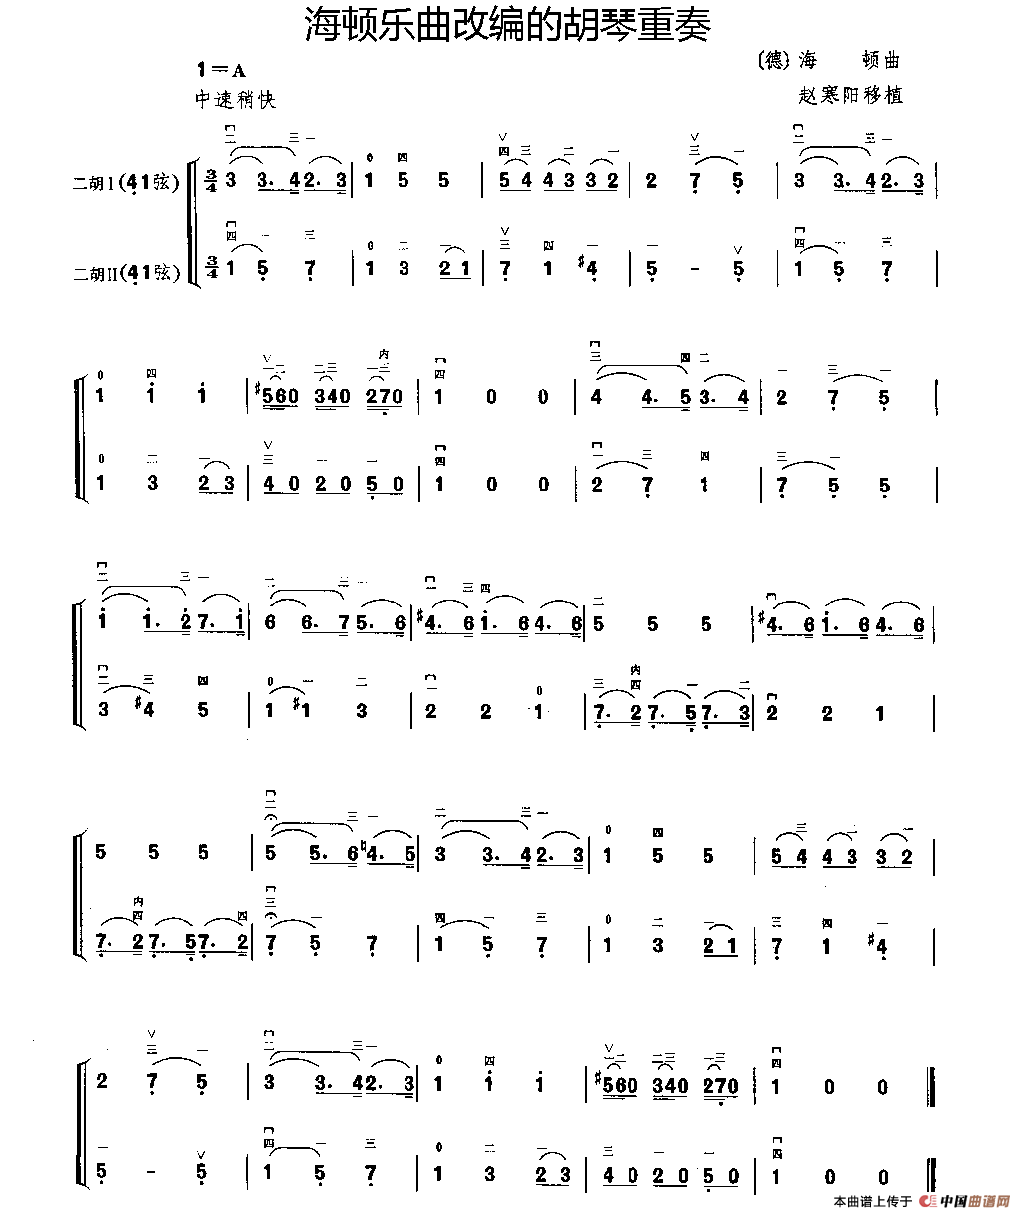 海顿乐曲改编的胡琴二重奏(1)_原文件名：112.gif